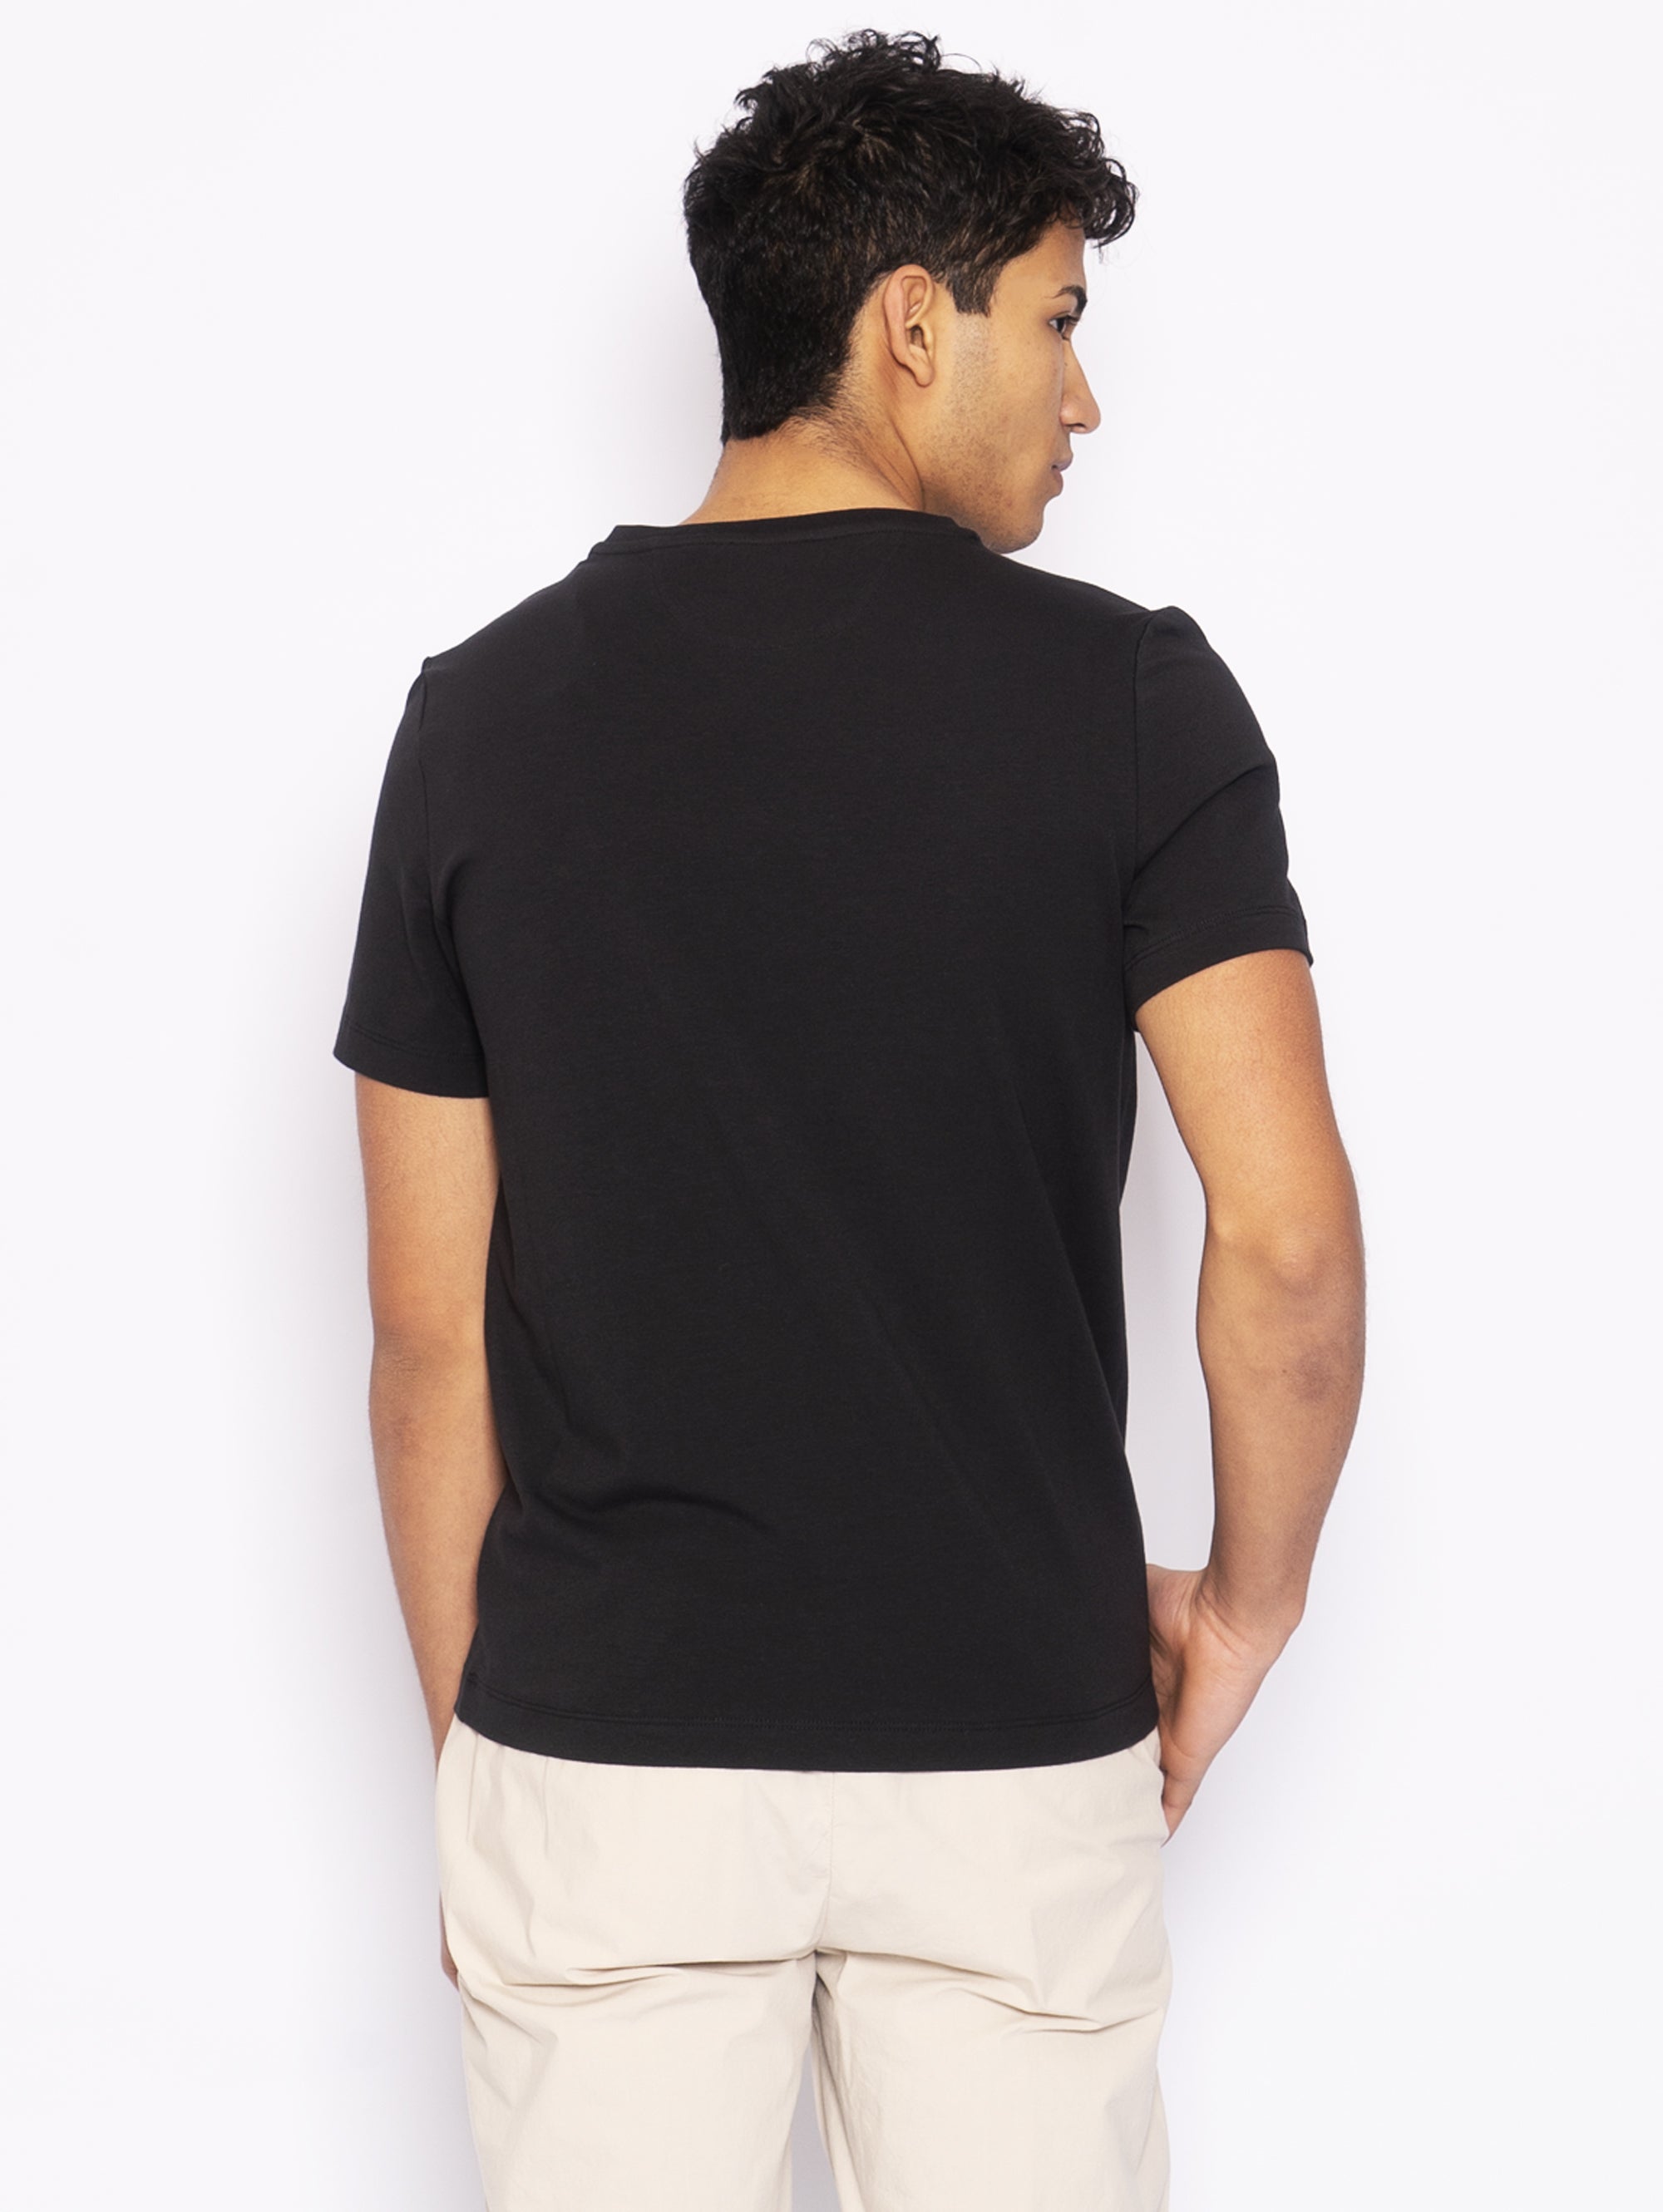 Schwarzes T-Shirt mit V-Ausschnitt